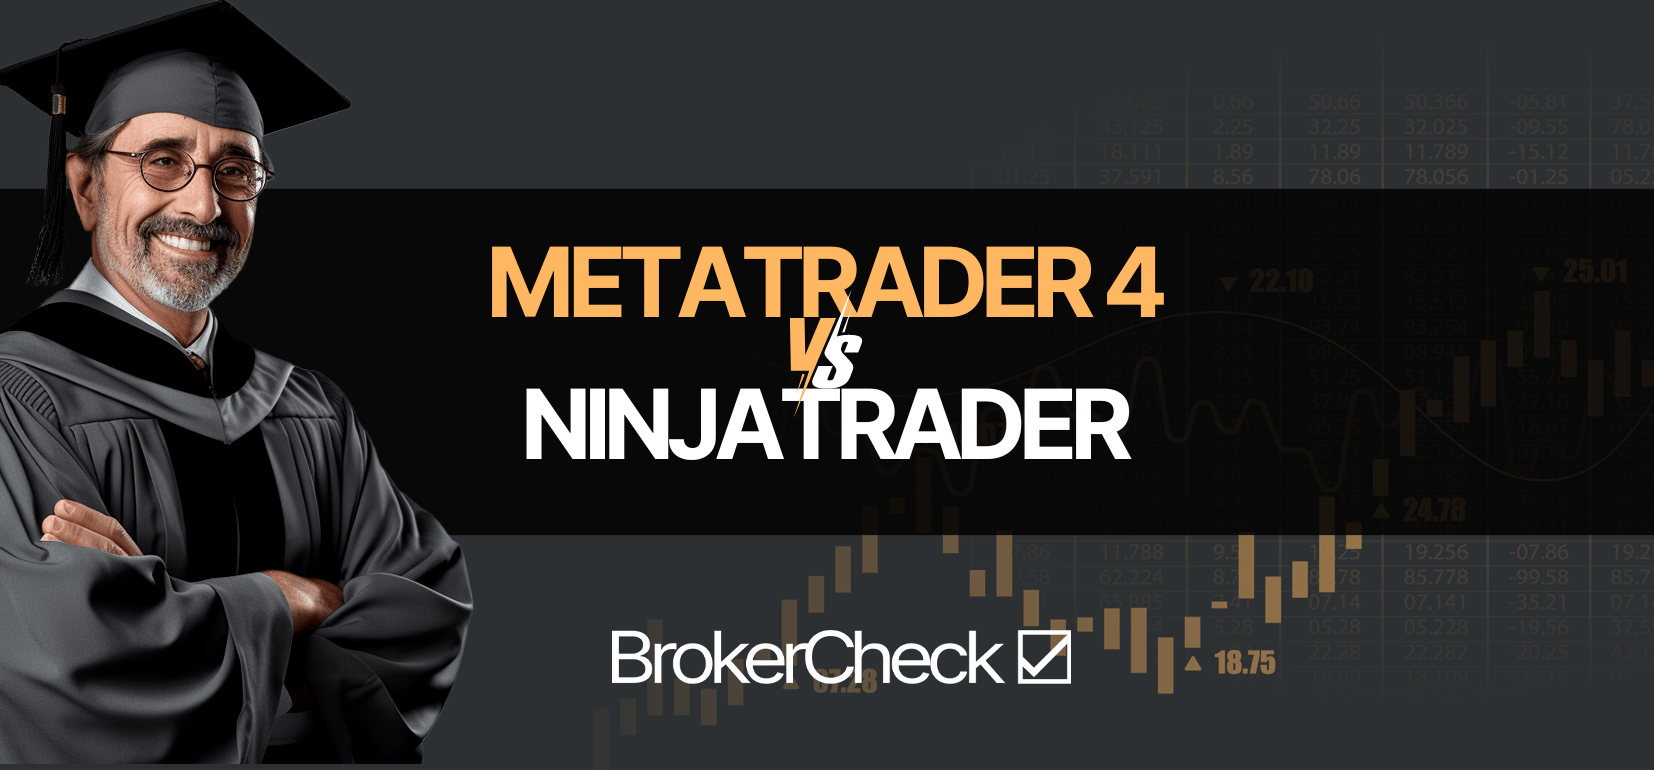 MetaTrader4 contra NinjaTrader